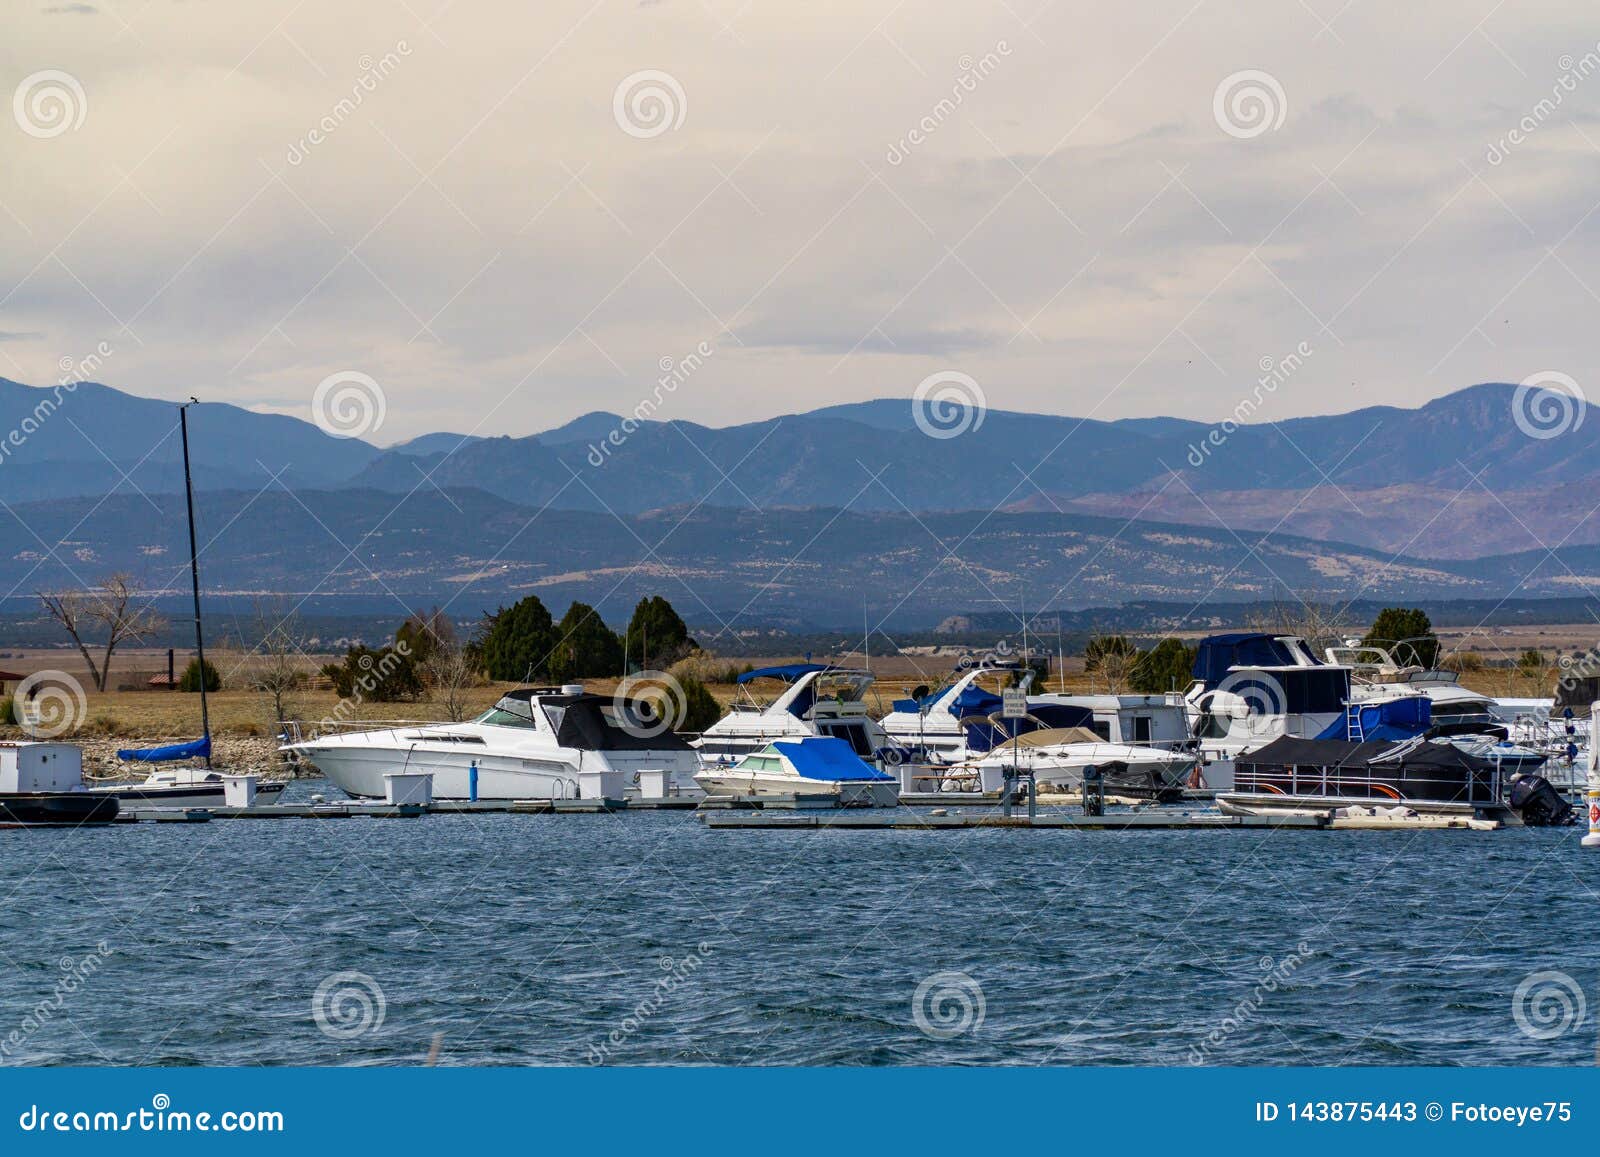 boat marina on lake pueblo state park colorado lake reservoir